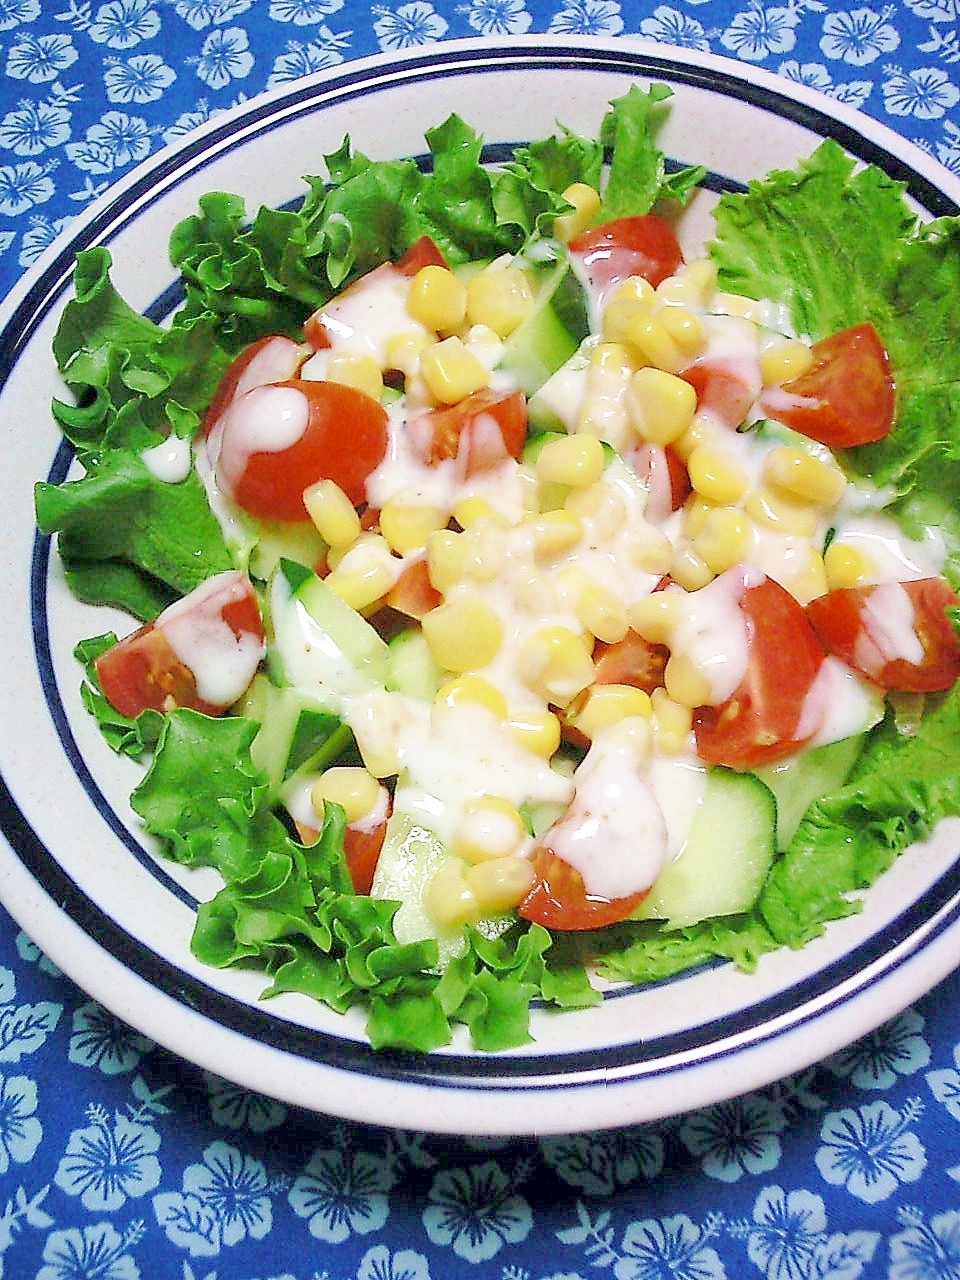 胡瓜、トマト、コーンの塩ドレヨーグルトサラダ